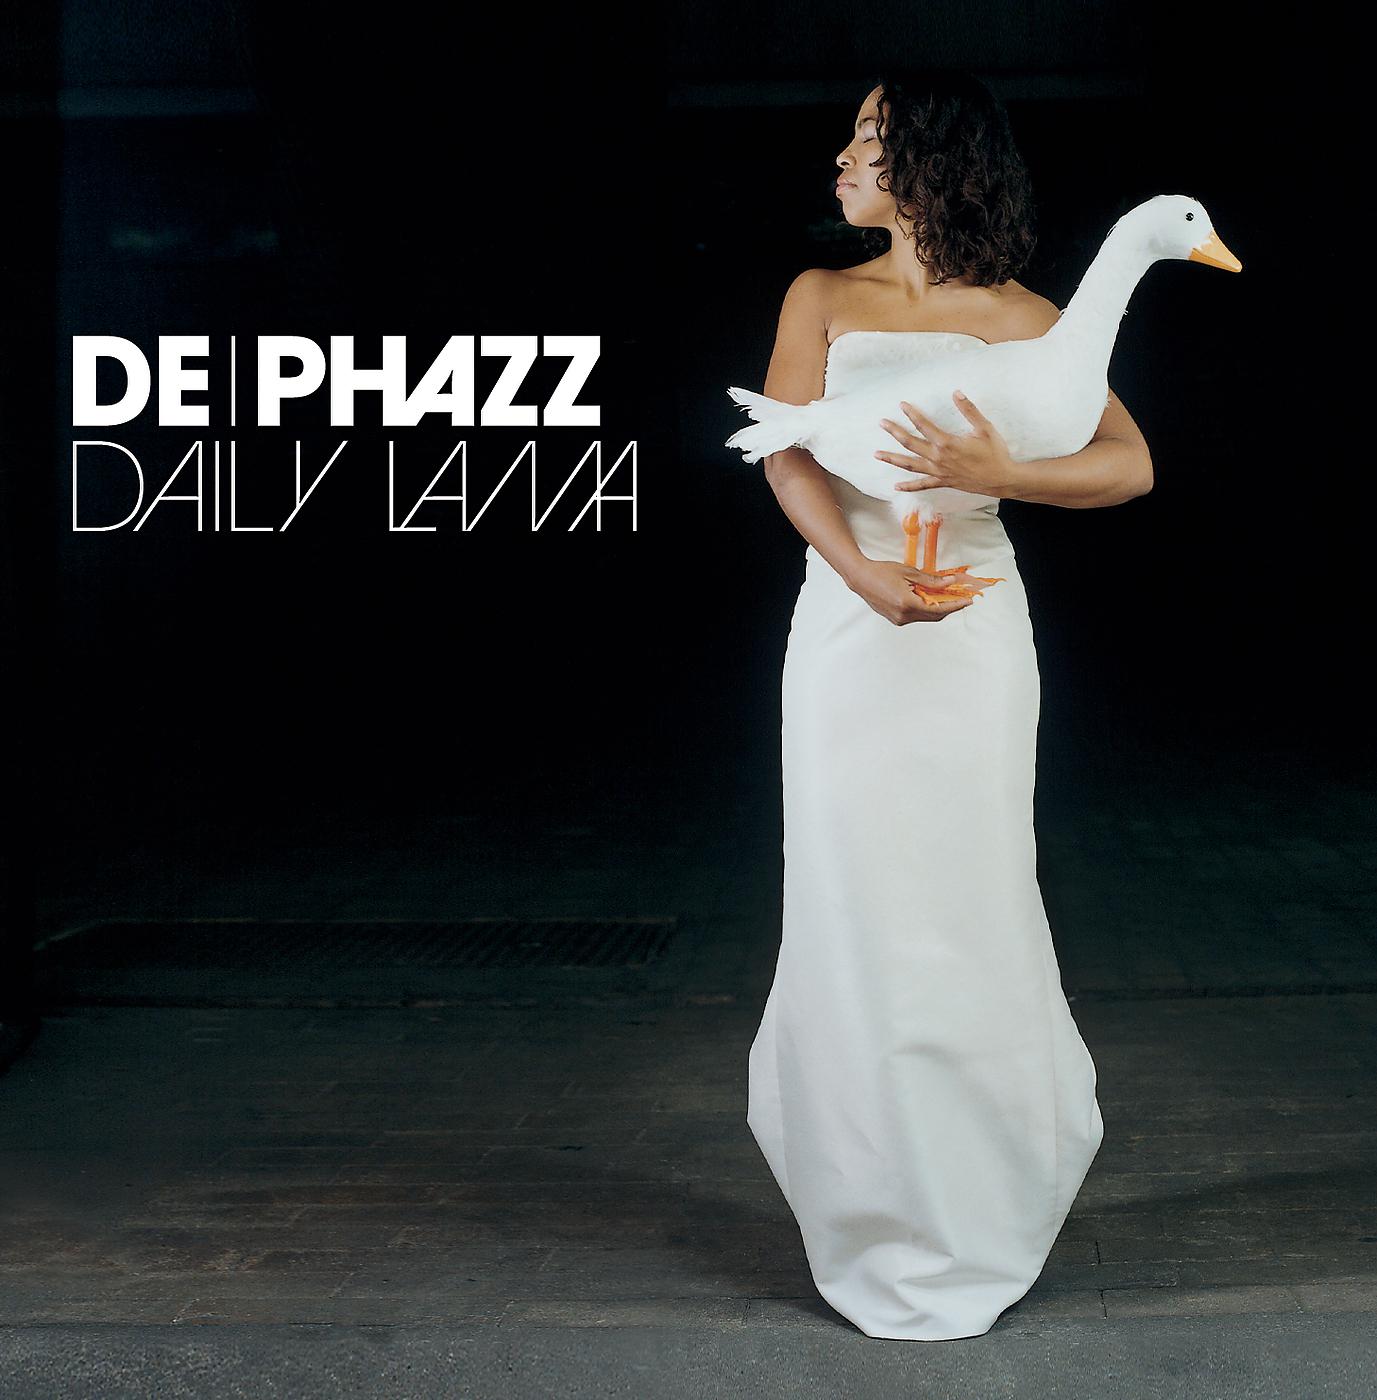 Daily Lama — четвертый студийный альбом электронной группы De-Phazz. Он был выпущен в 2002 году.